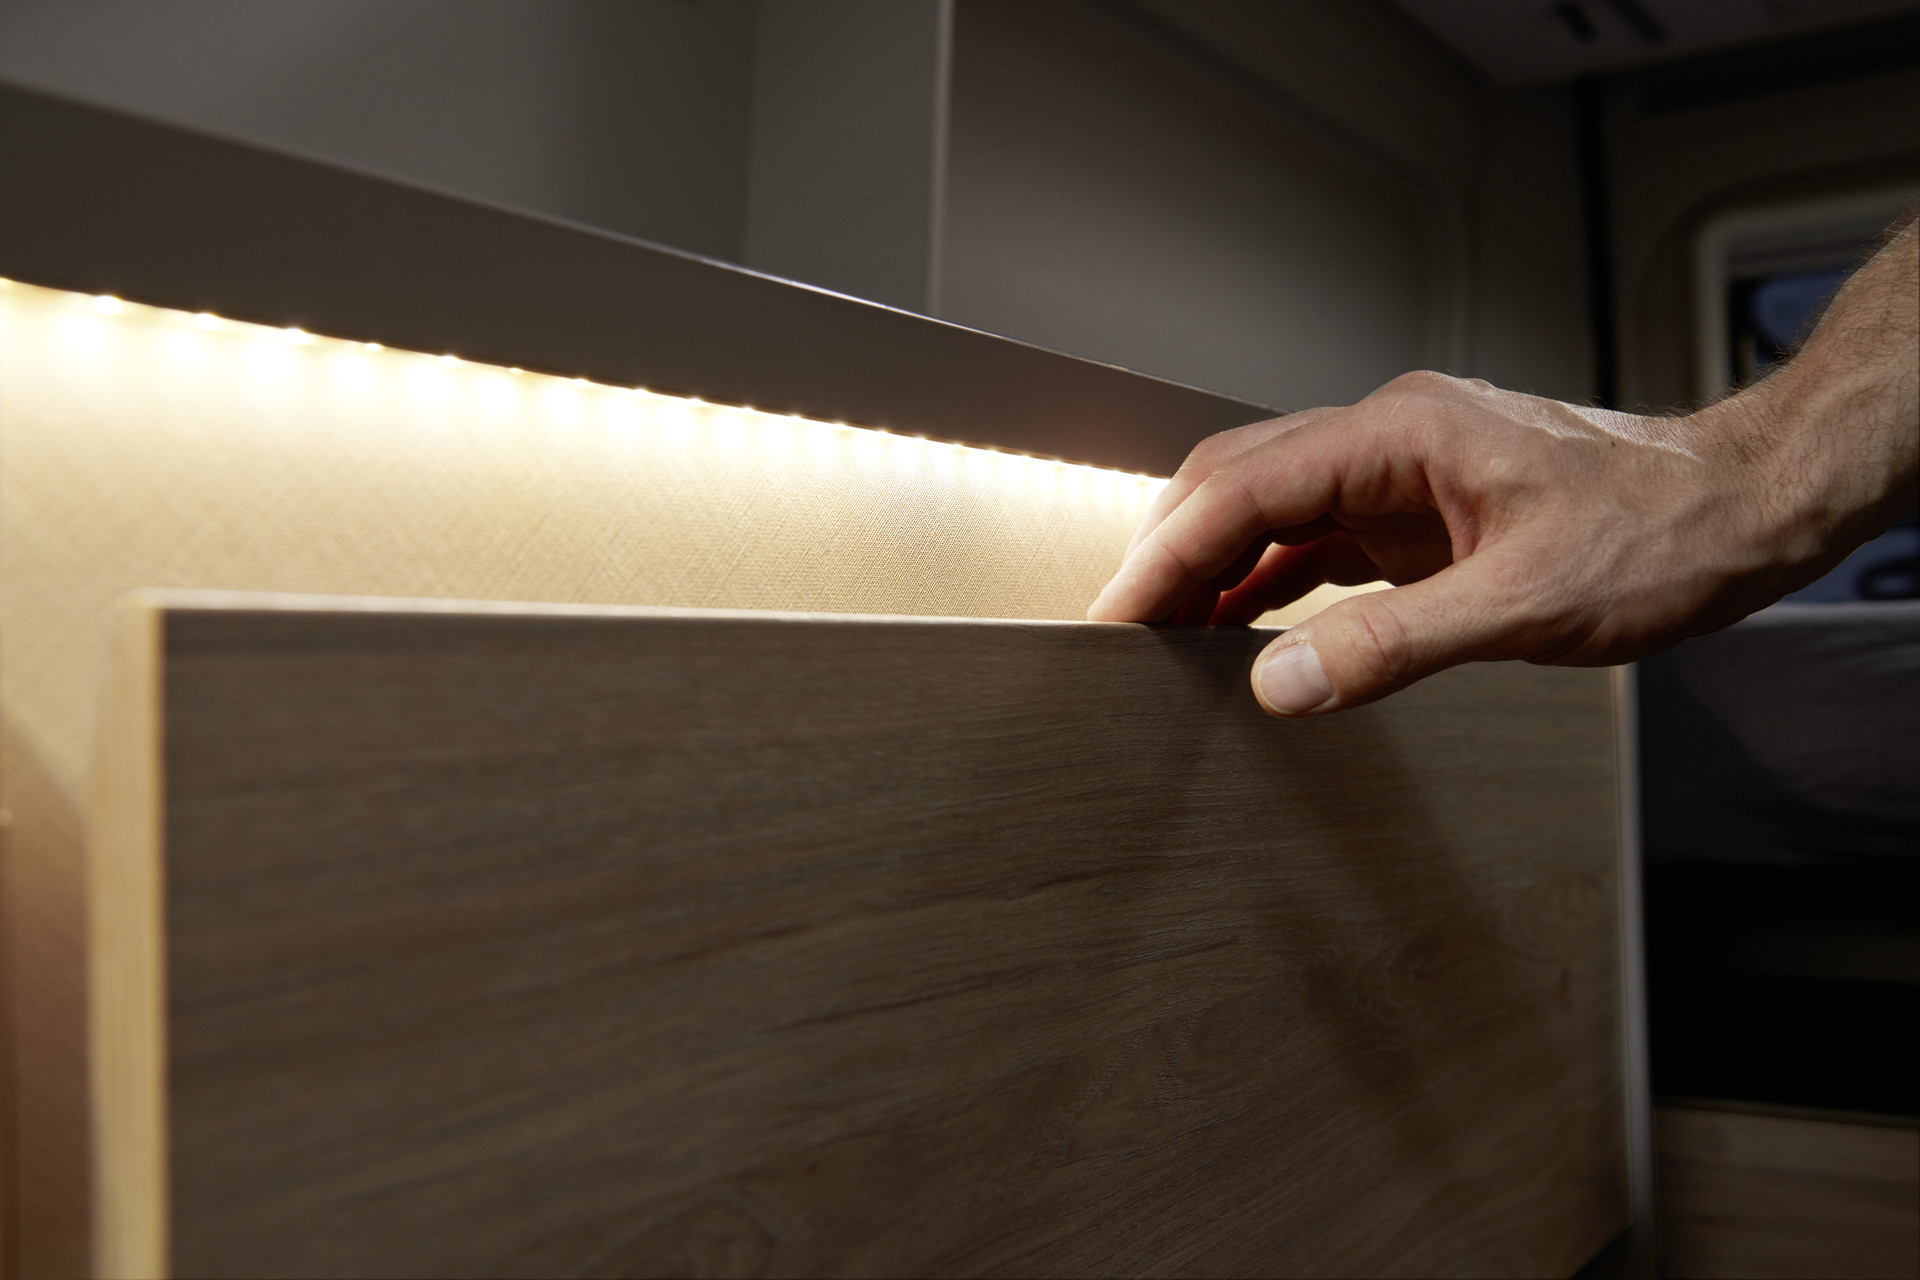 L’éclairage indirect permet de mieux voir l’intérieur du tiroir, tout en créant une ambiance chaleureuse.